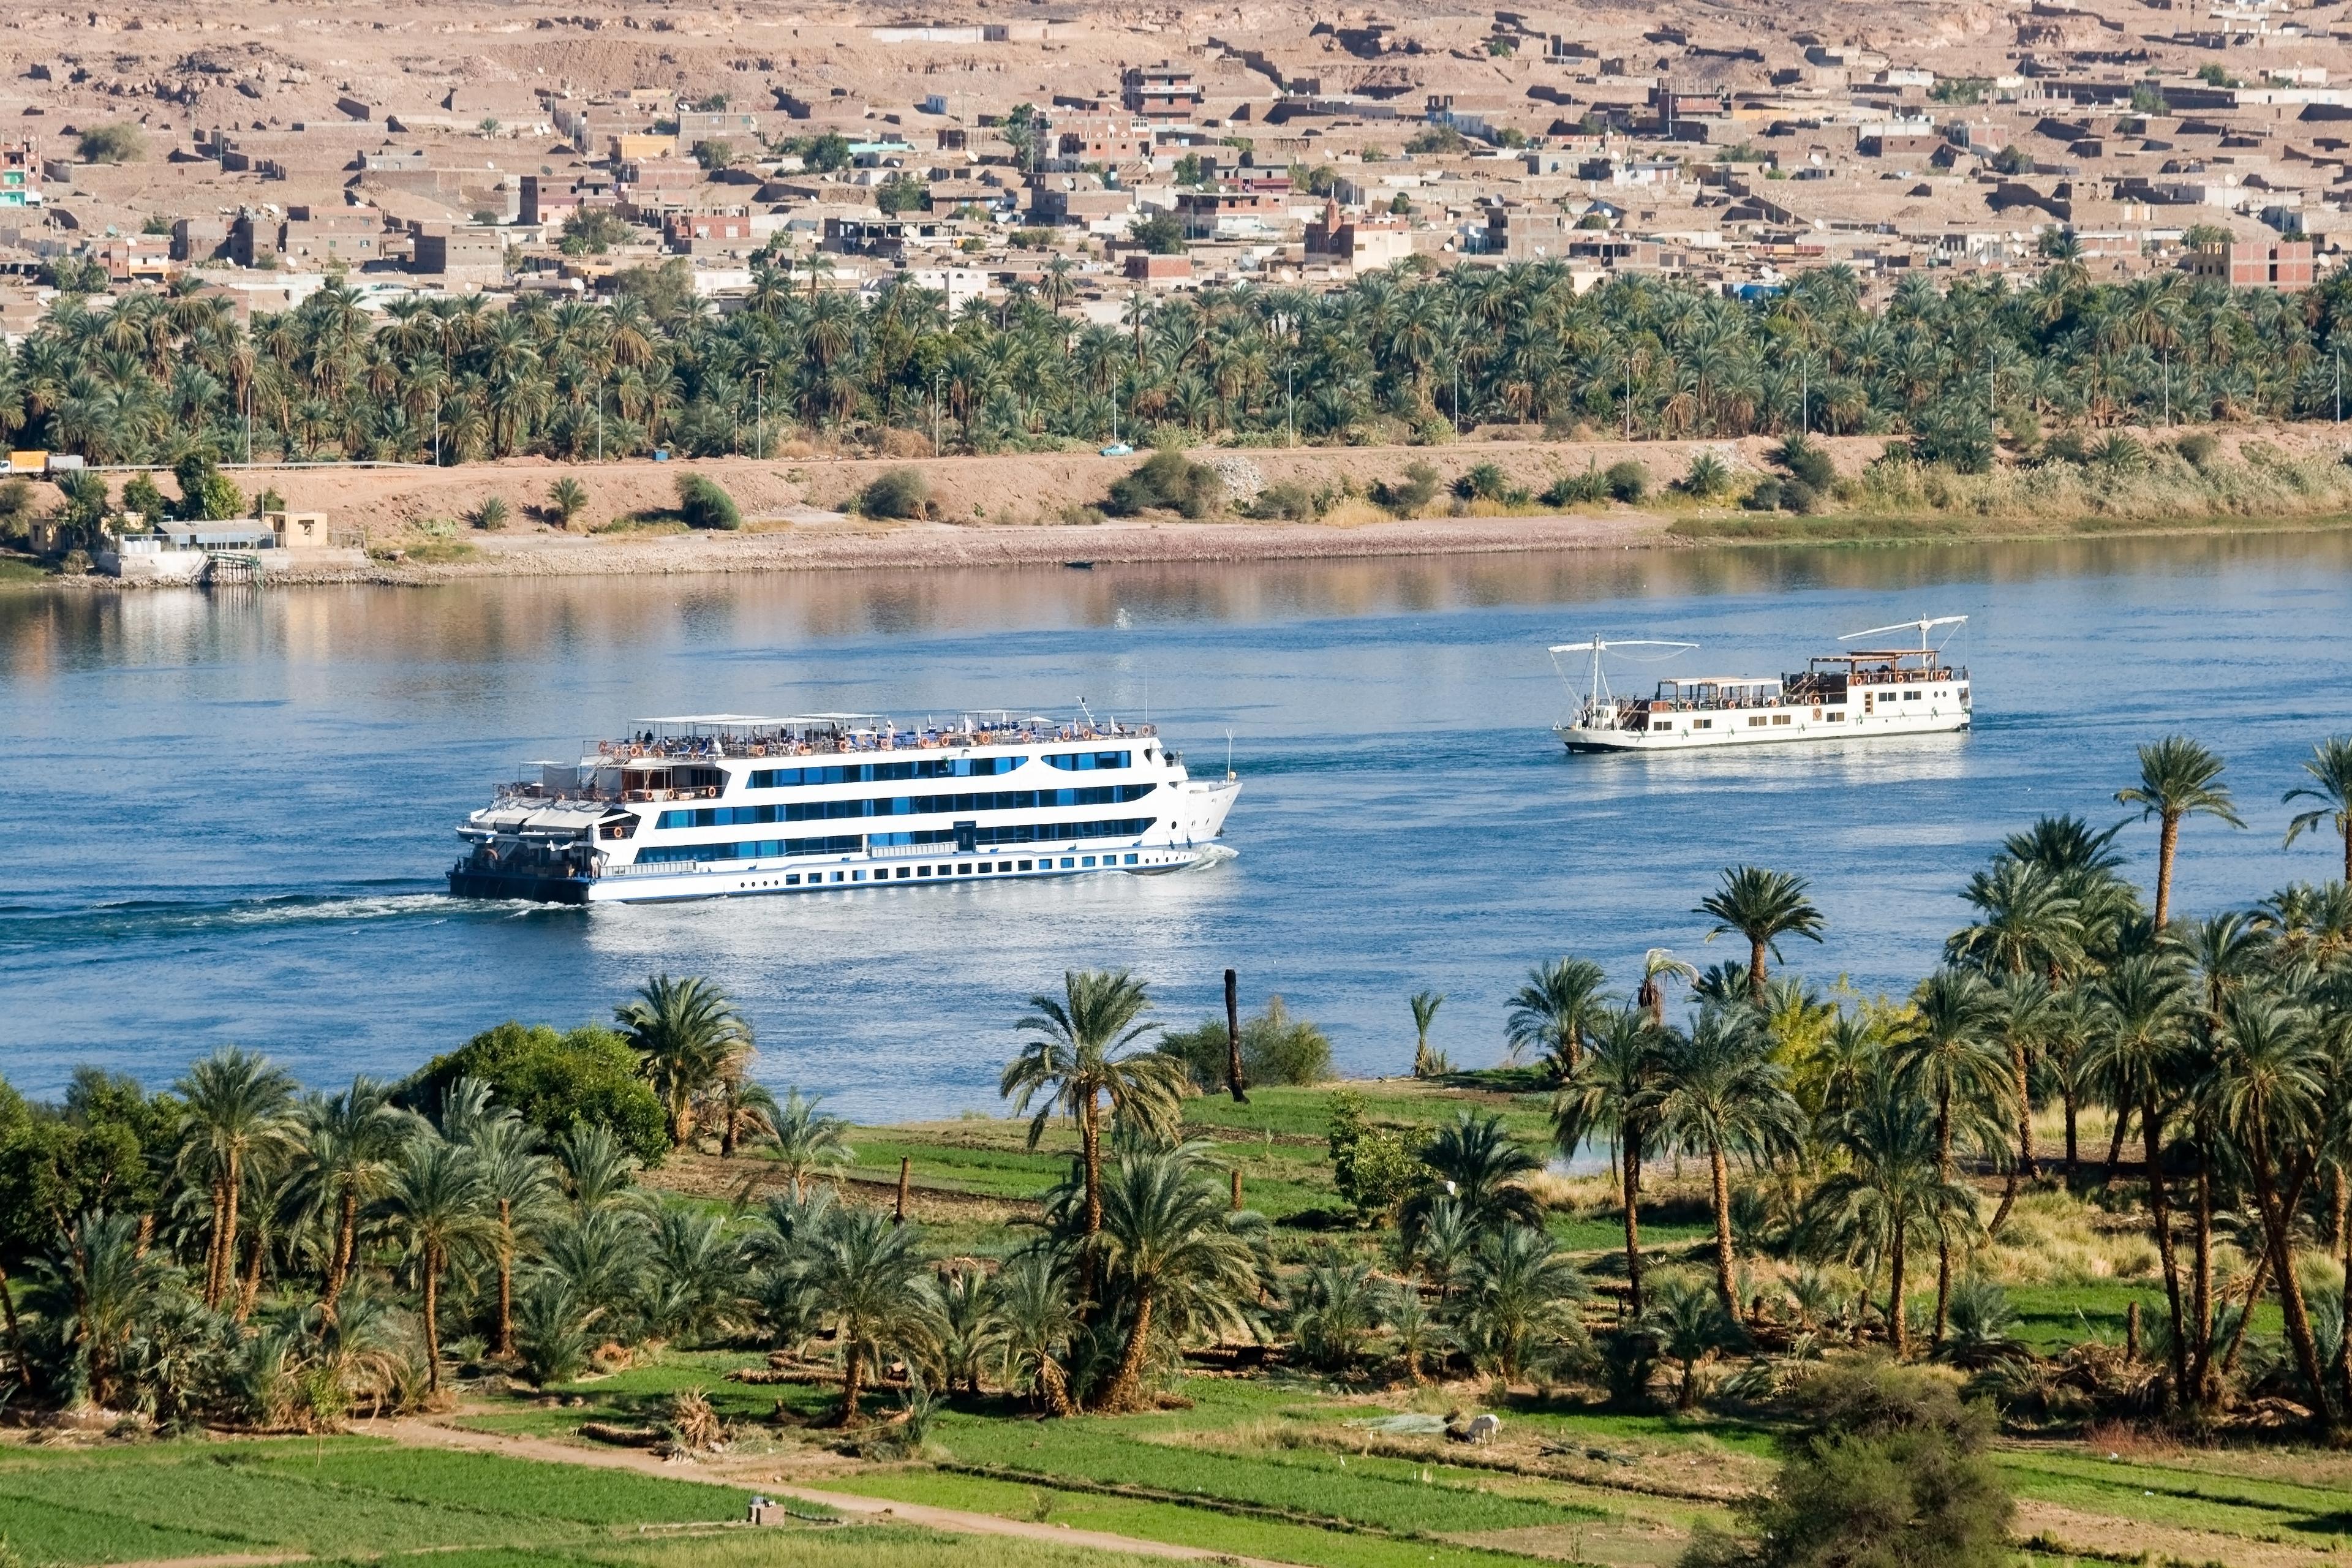 River Nile cruise